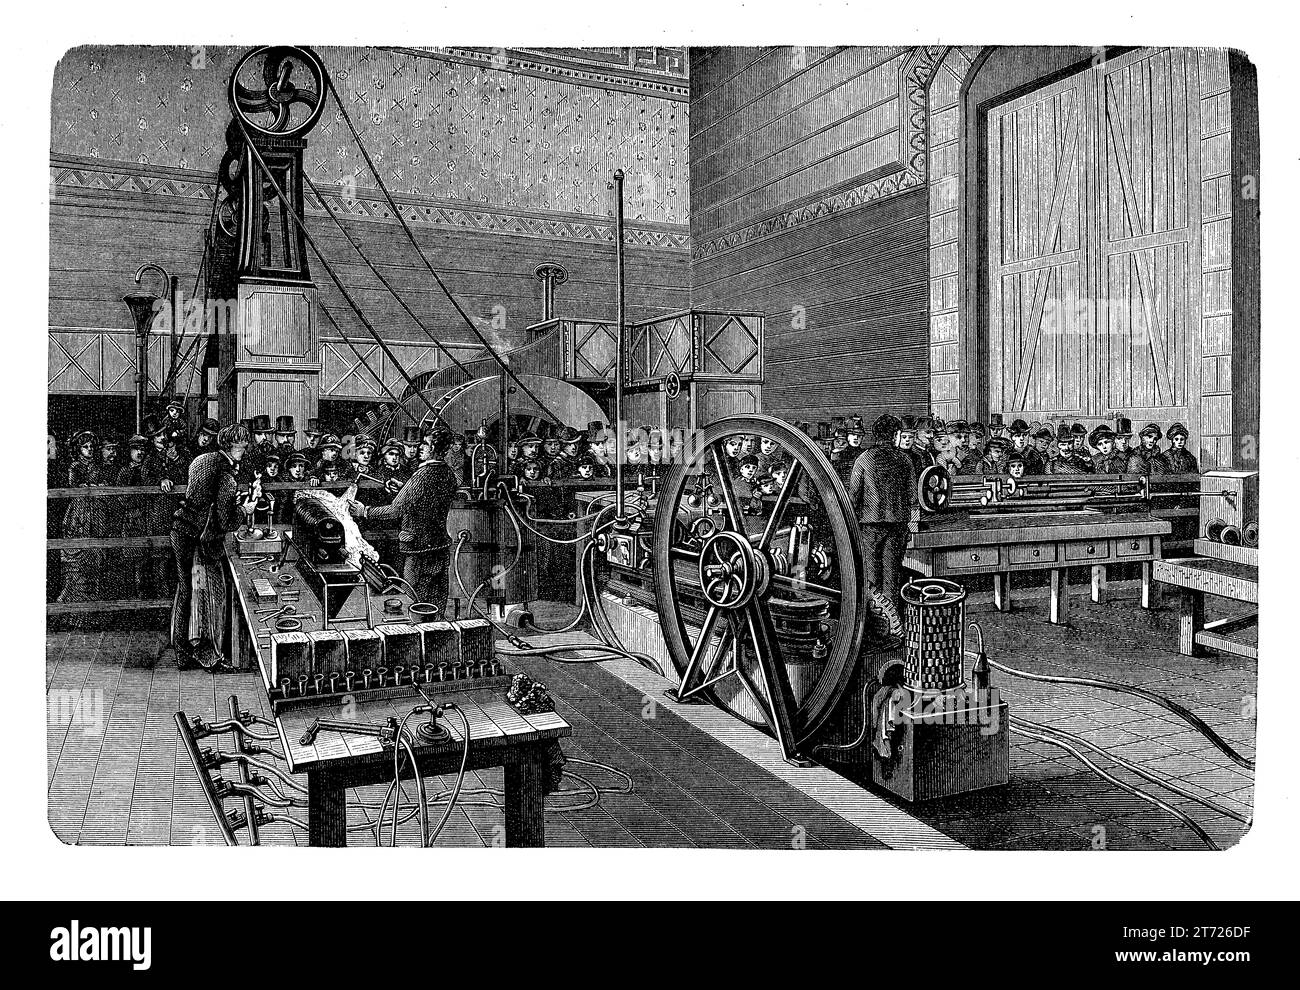 Sala macchine al Musee des Arts et Metiers di Parigi, fondata nel 1794, il più antico museo della scienza di tutta Europa con una vasta collezione di strumenti scientifici, macchine e utensili Foto Stock